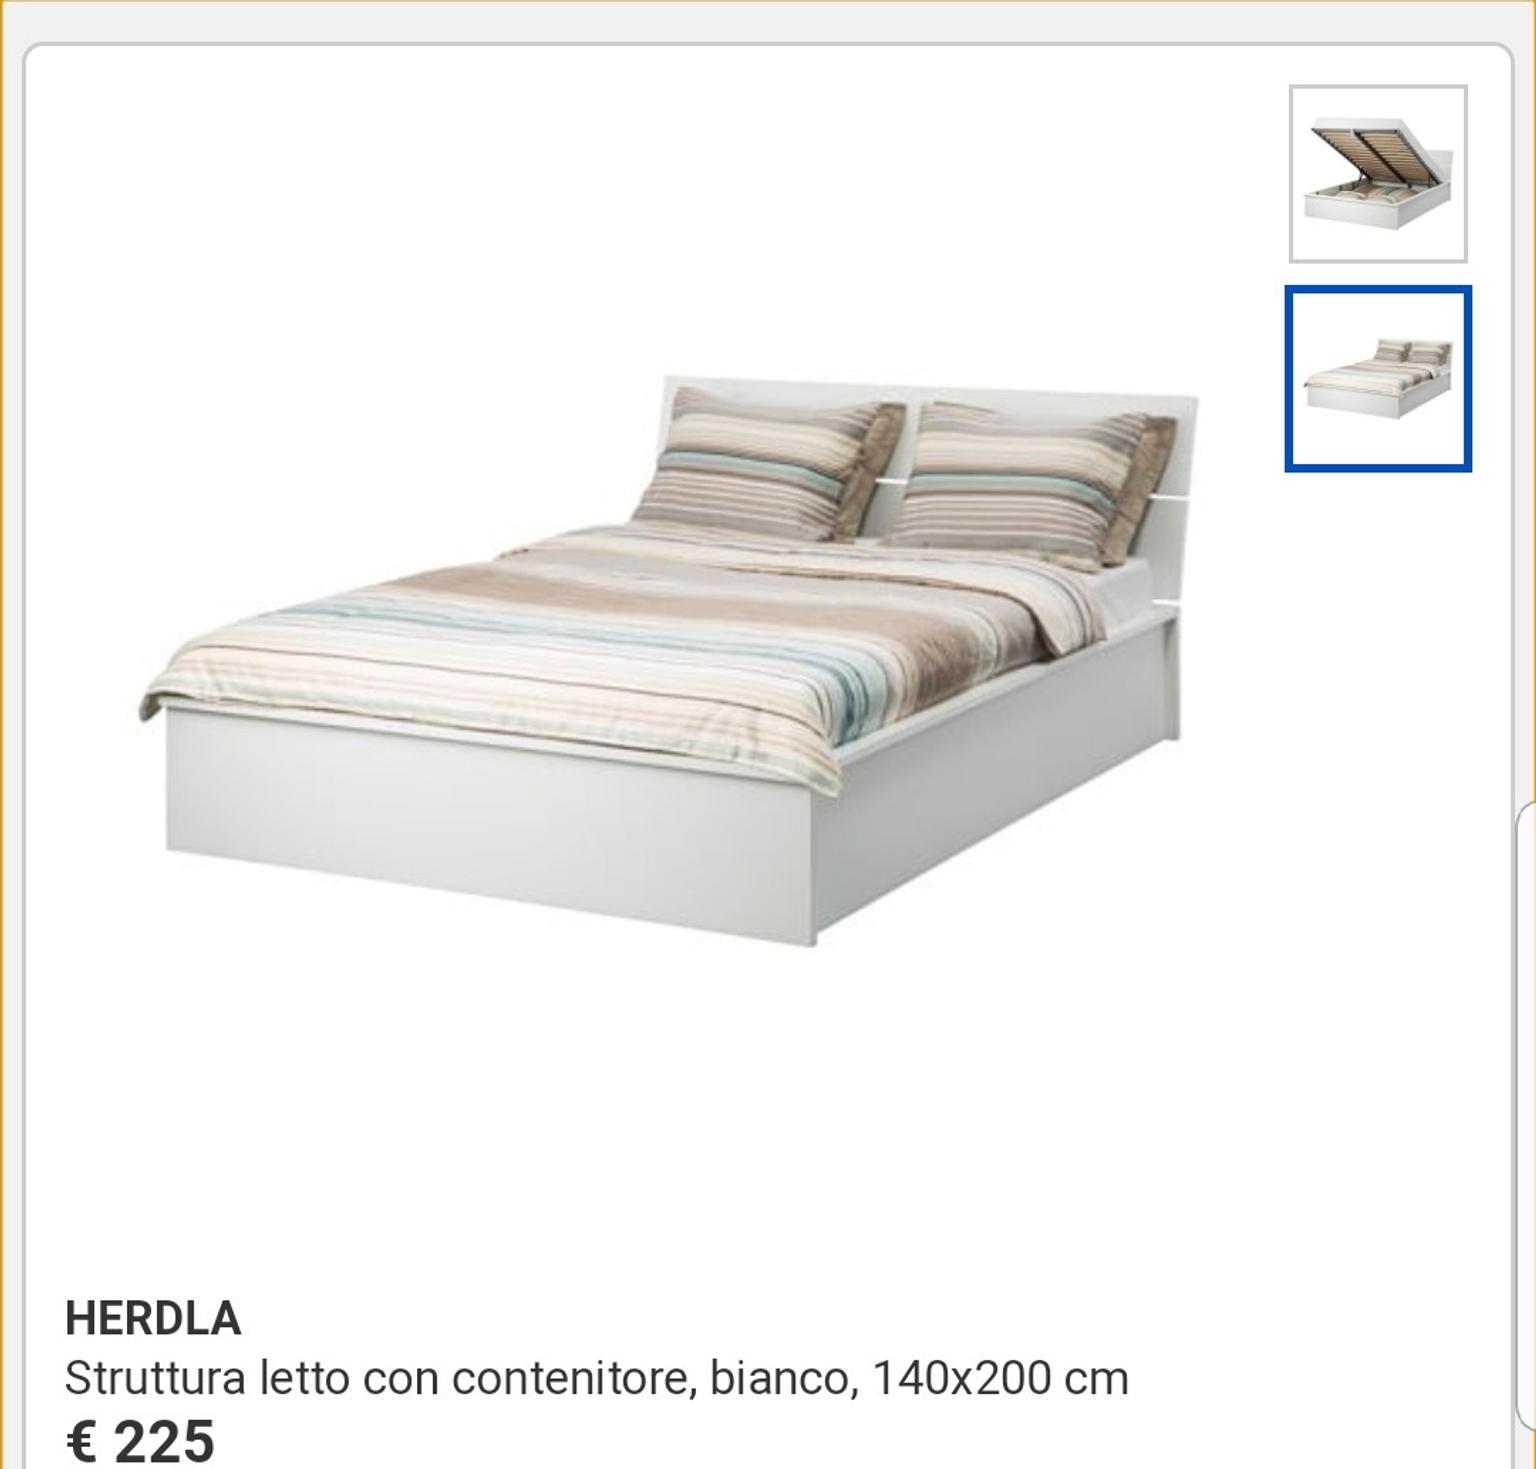 Struttura Letto Con Contenitore.Letto Contenitore Ikea 140x200 In 00198 Roma For 200 00 For Sale